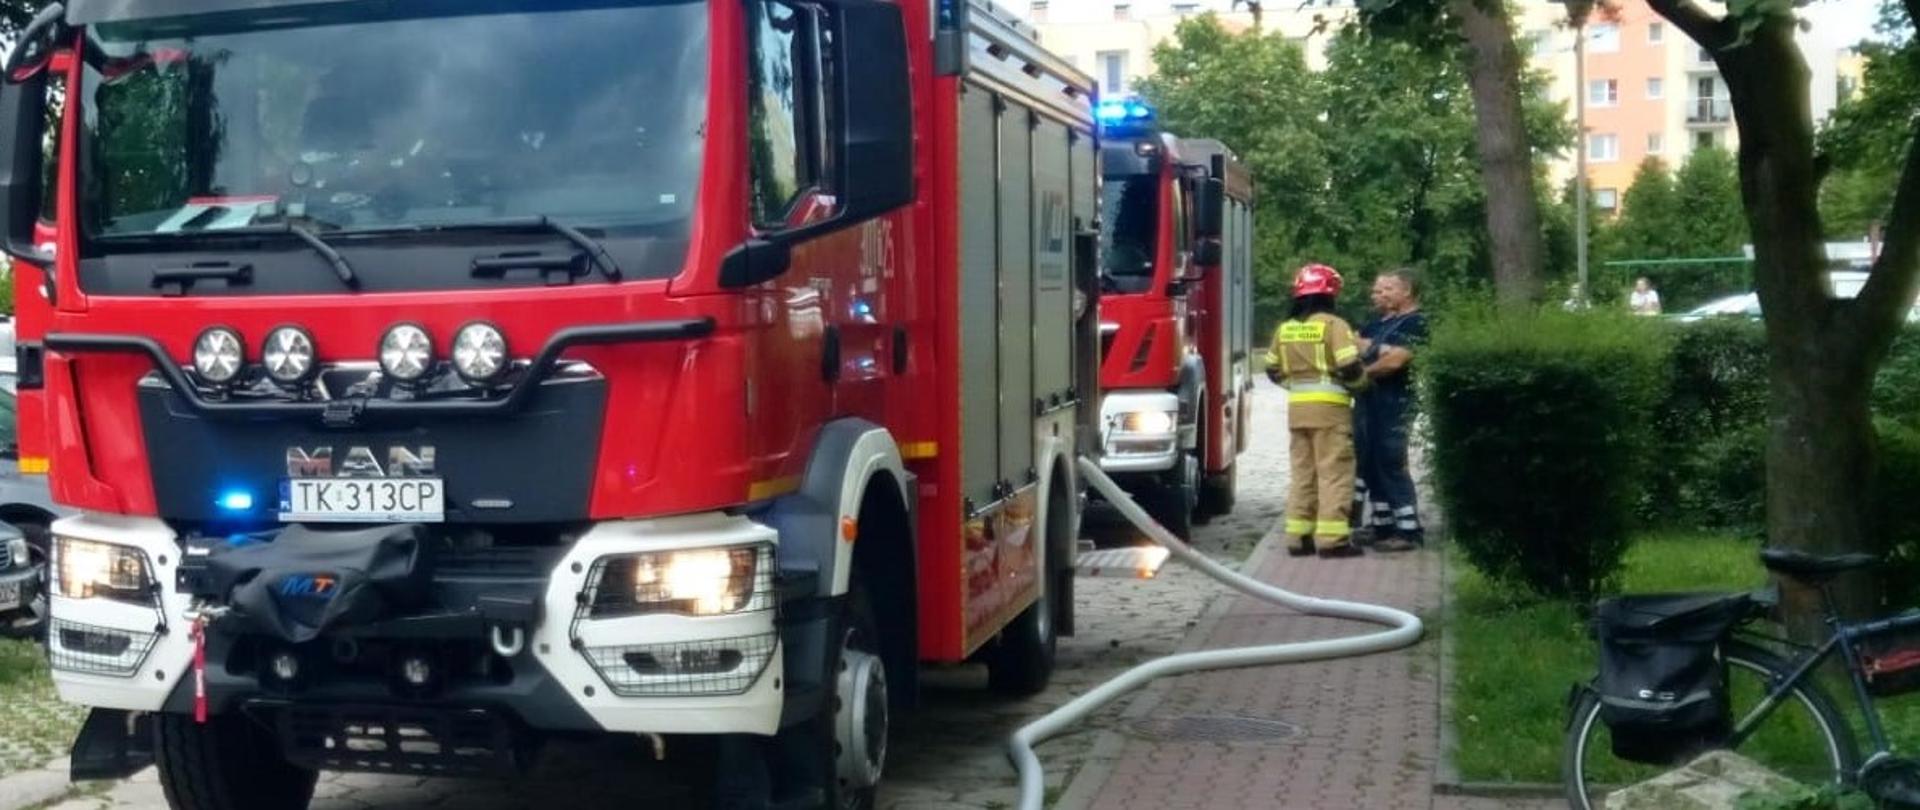 Zdjęcie przedstawia dwa samochody pożarnicze, które stoją na drodze osiedlowej z podpiętym wężem gaśniczym. 